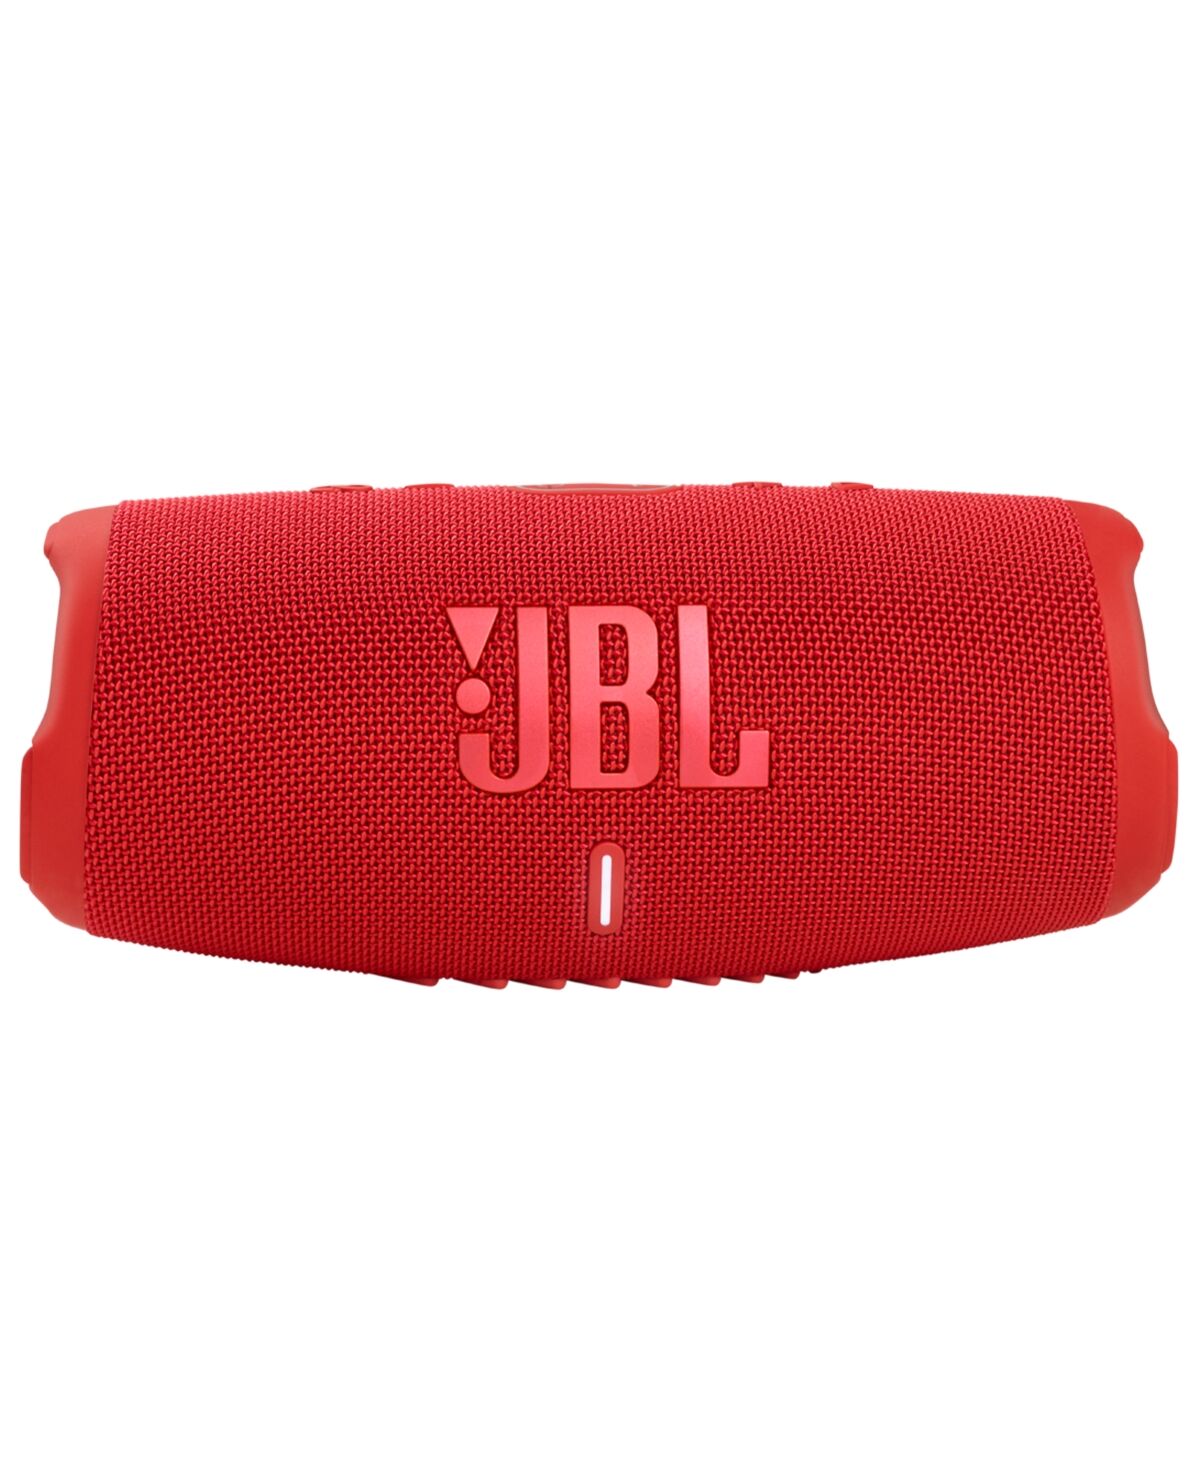 JBL Charge 5 Waterproof Bluetooth Speaker - Red